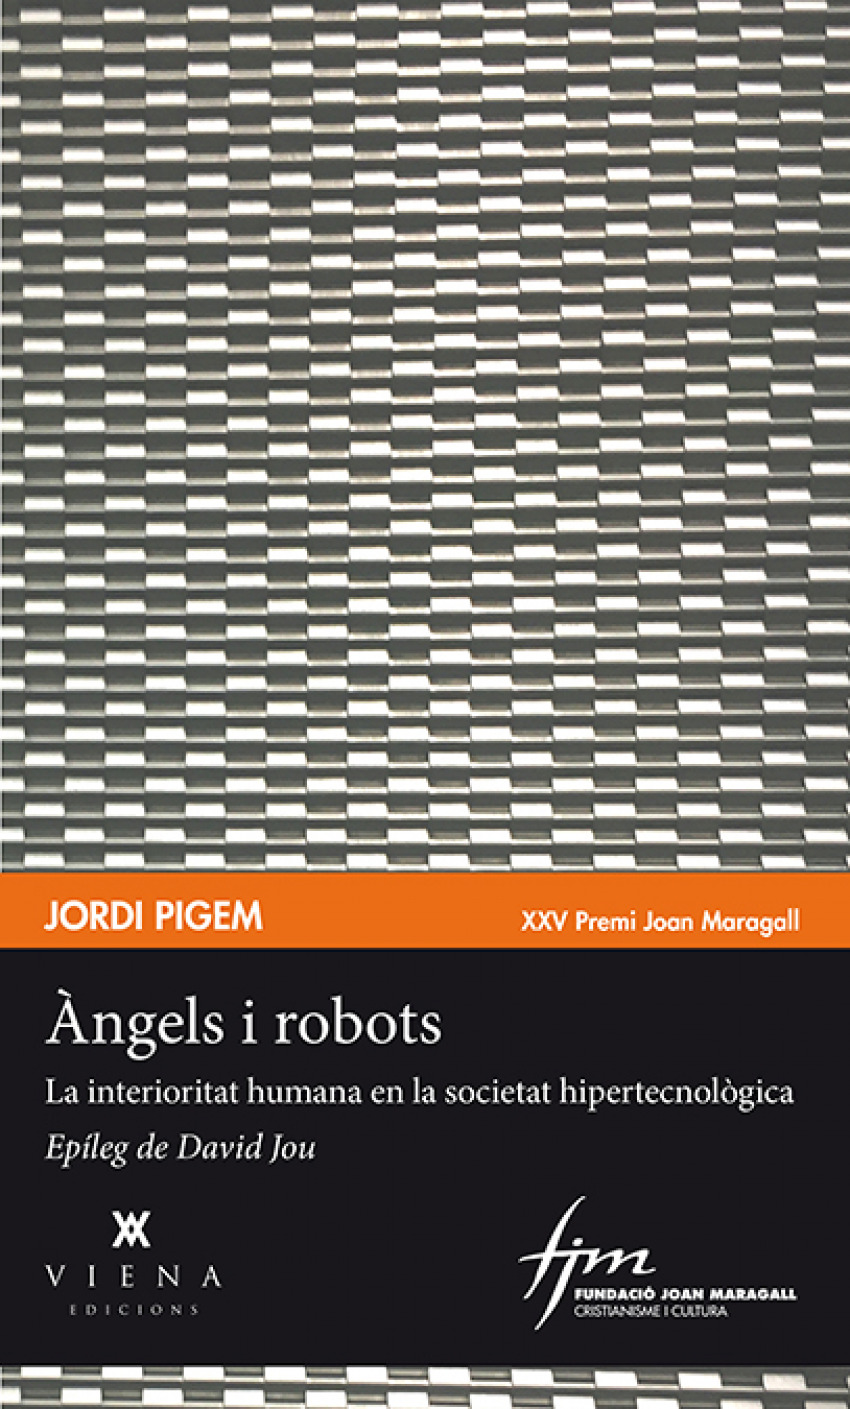 Angels i robots - Pigem, Jordi